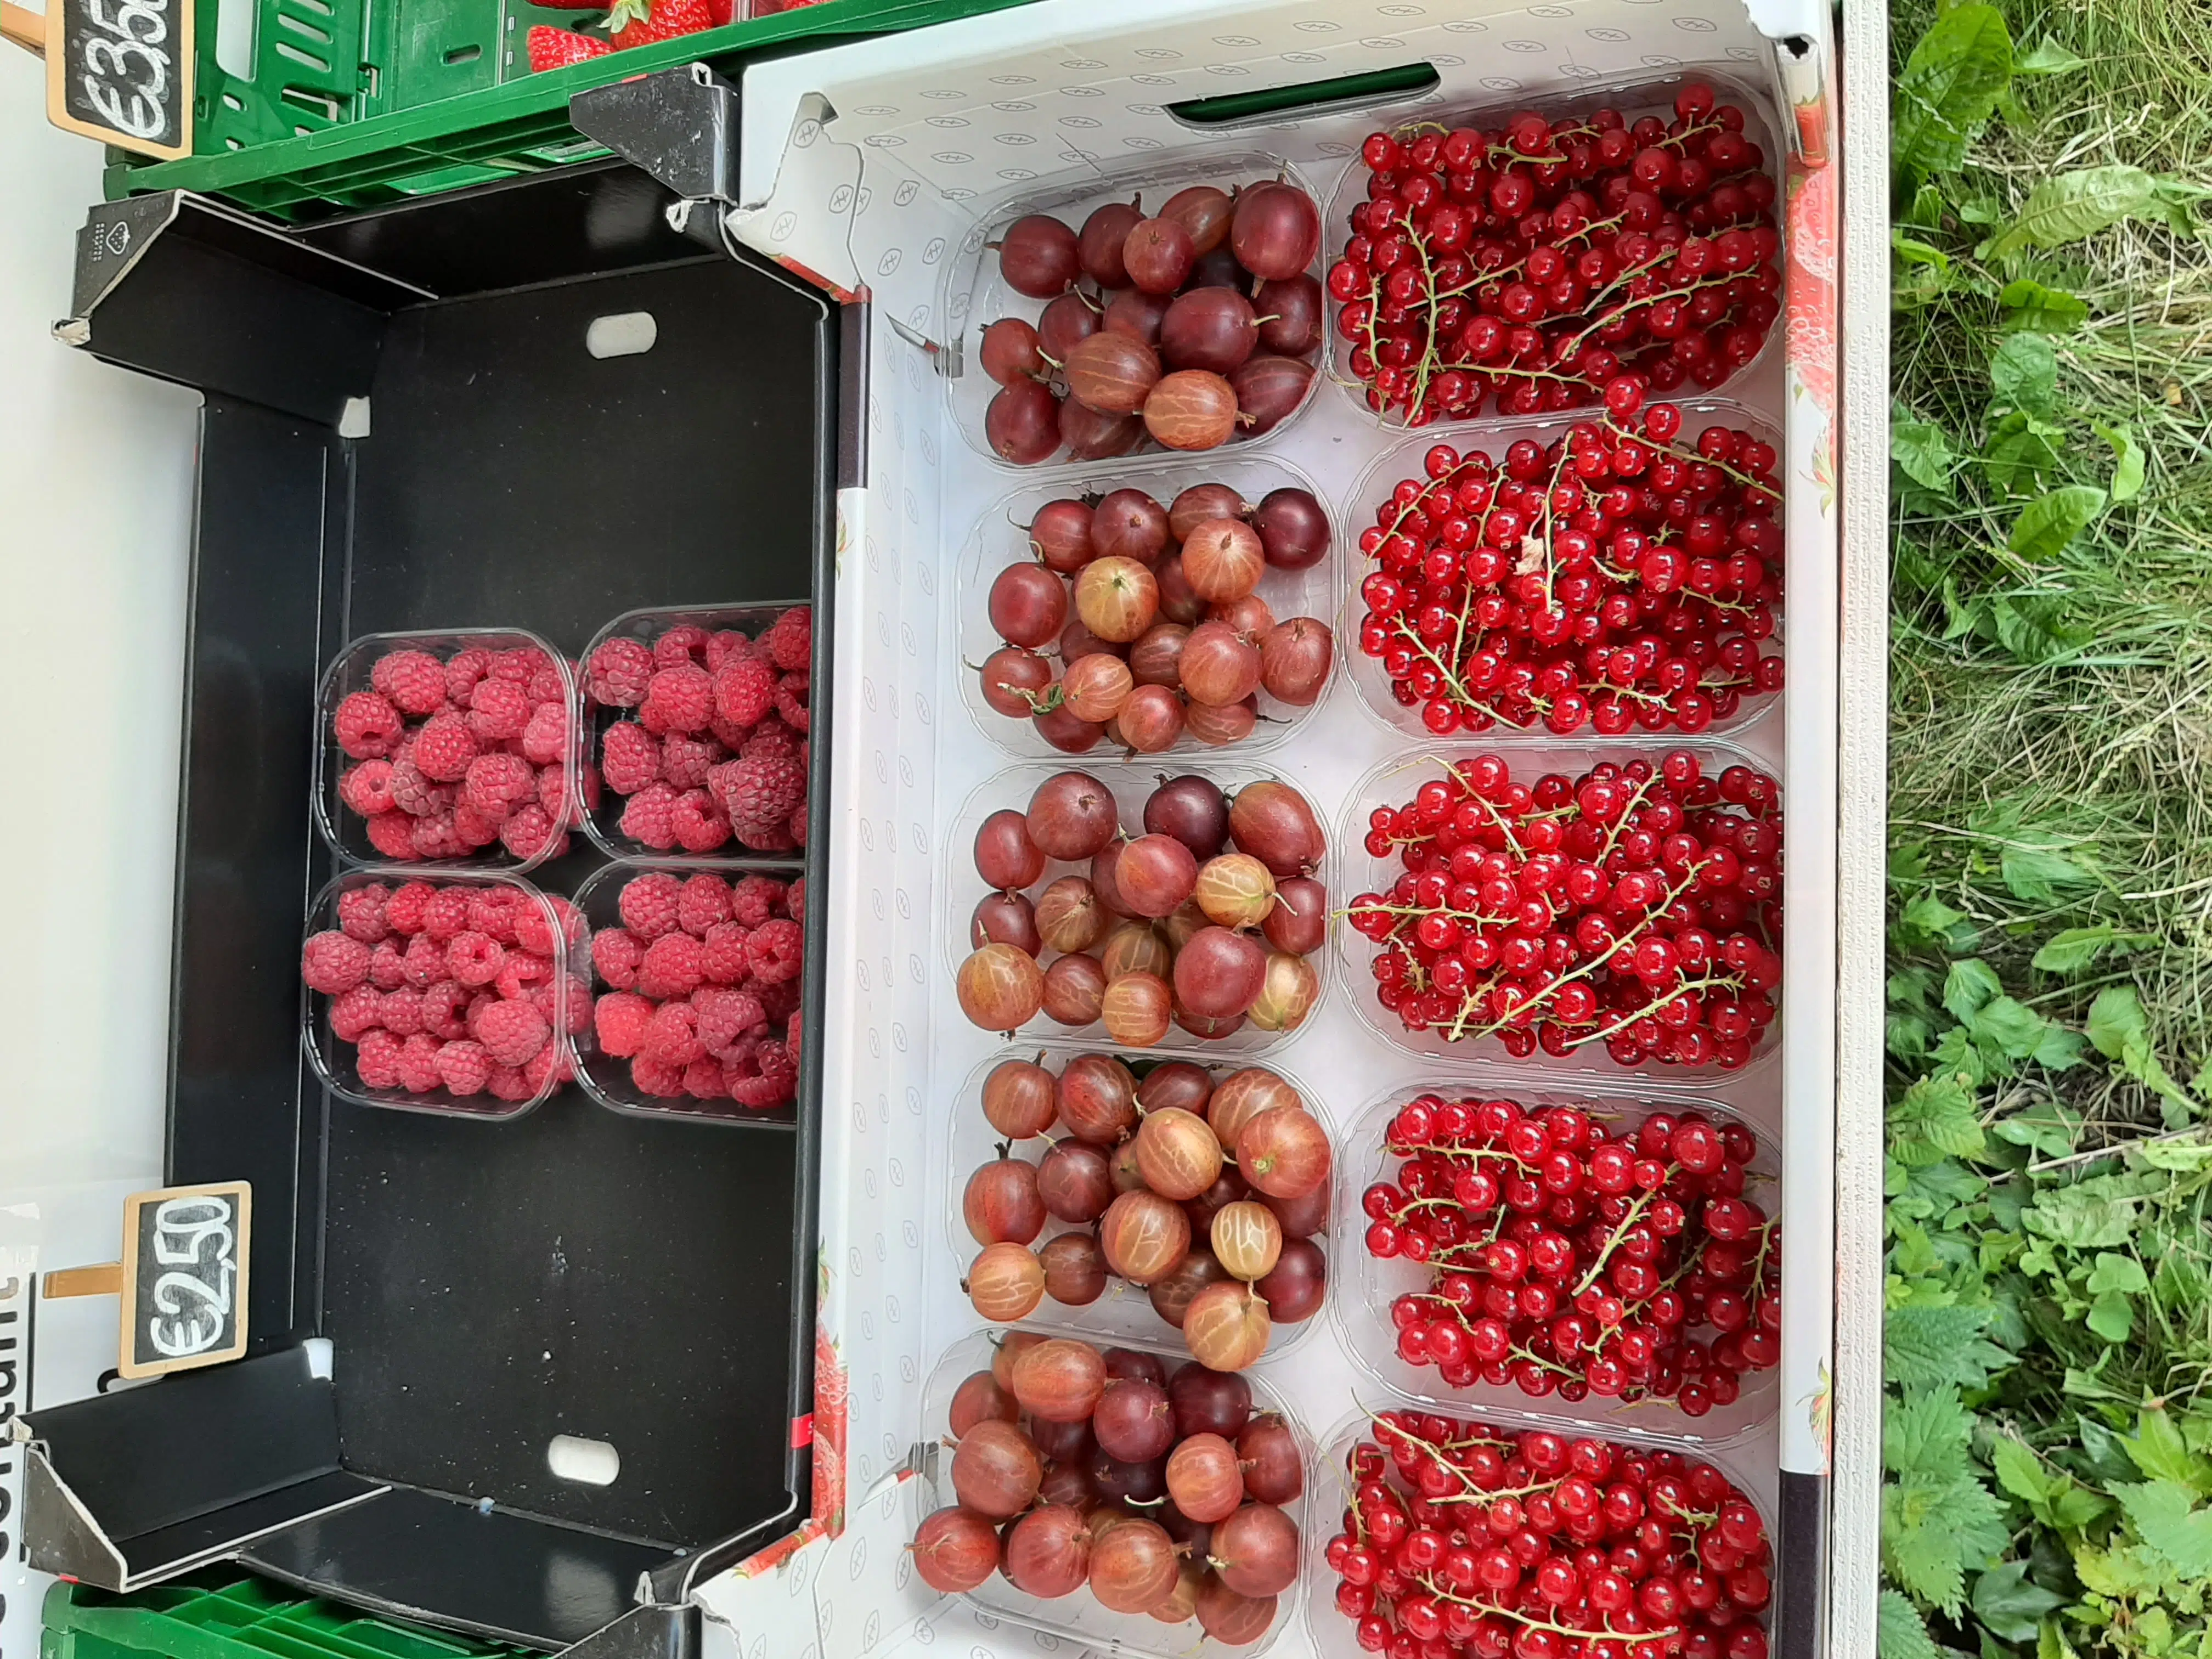 Fruit (rode bessen, kruisbessen en frambozen) bij een fruitkraam